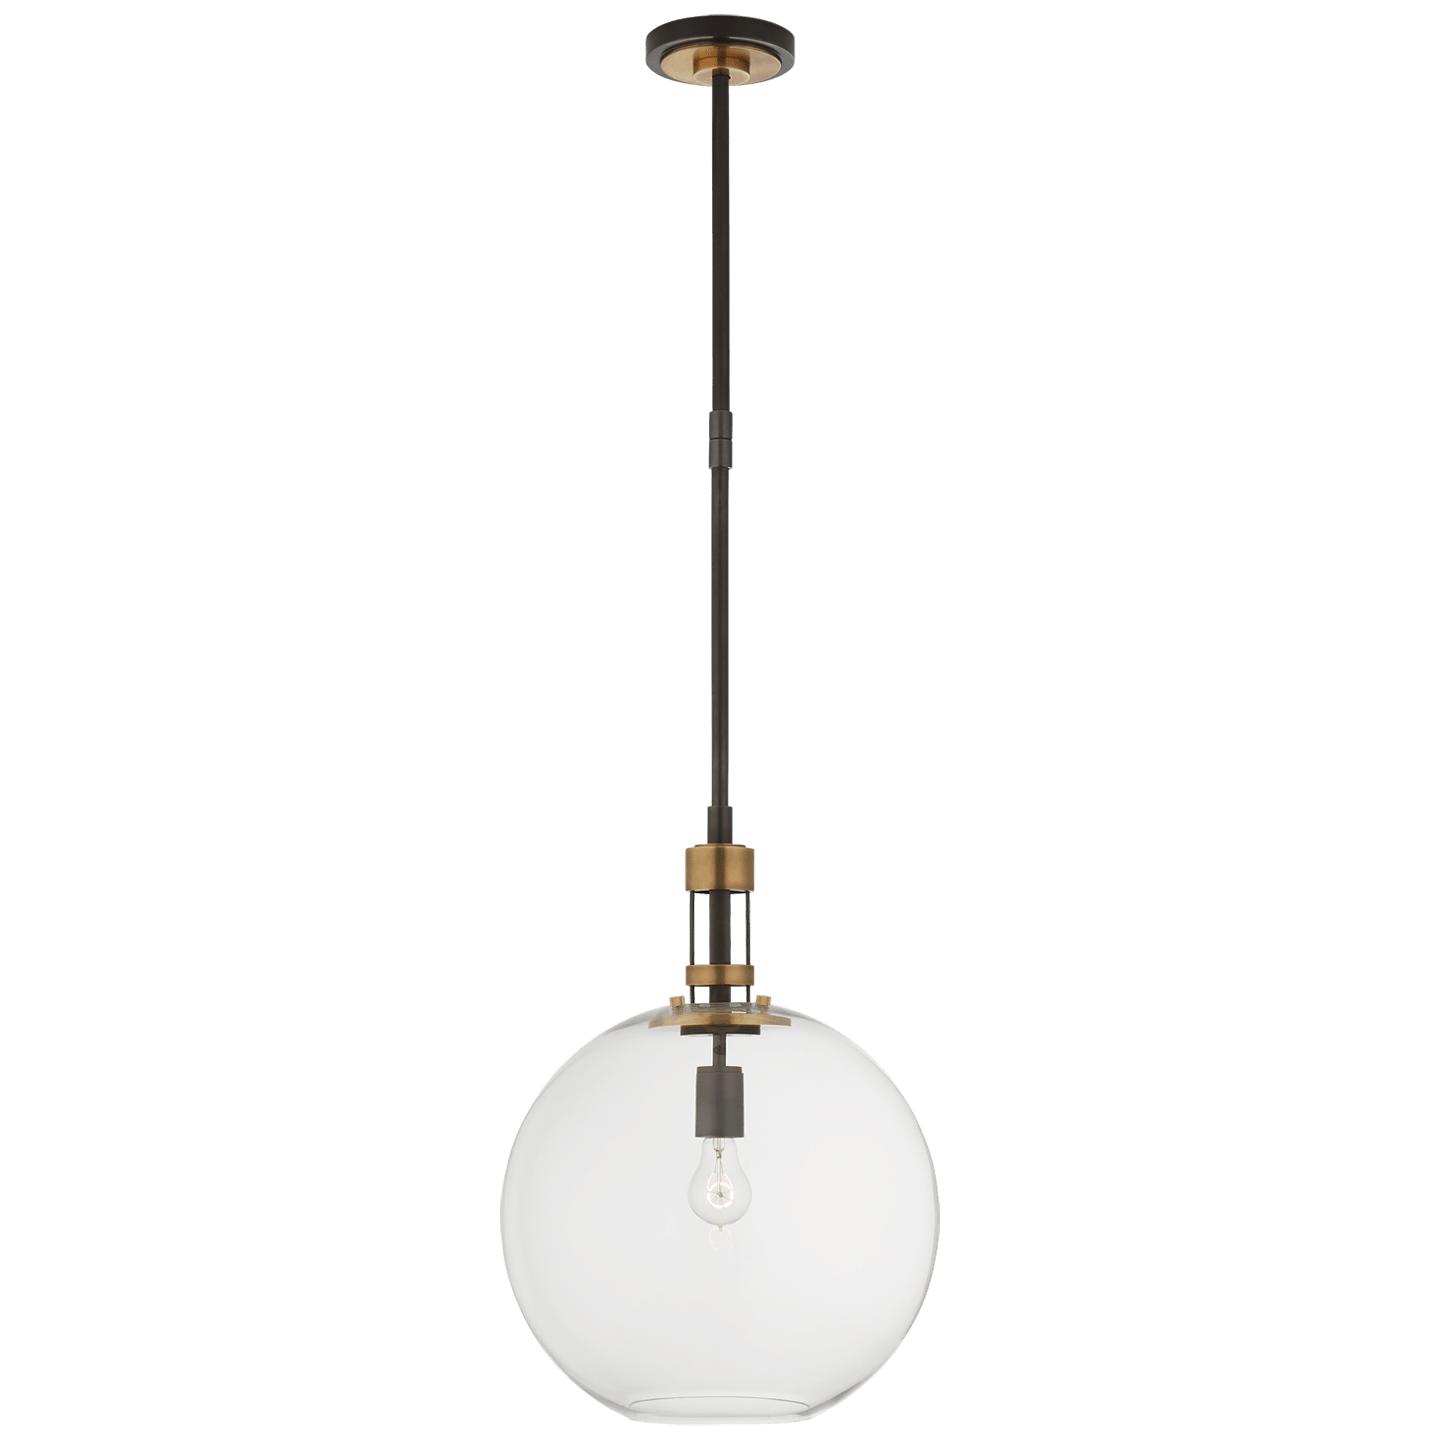 Купить Подвесной светильник Gable Large Globe Pendant в интернет-магазине roooms.ru